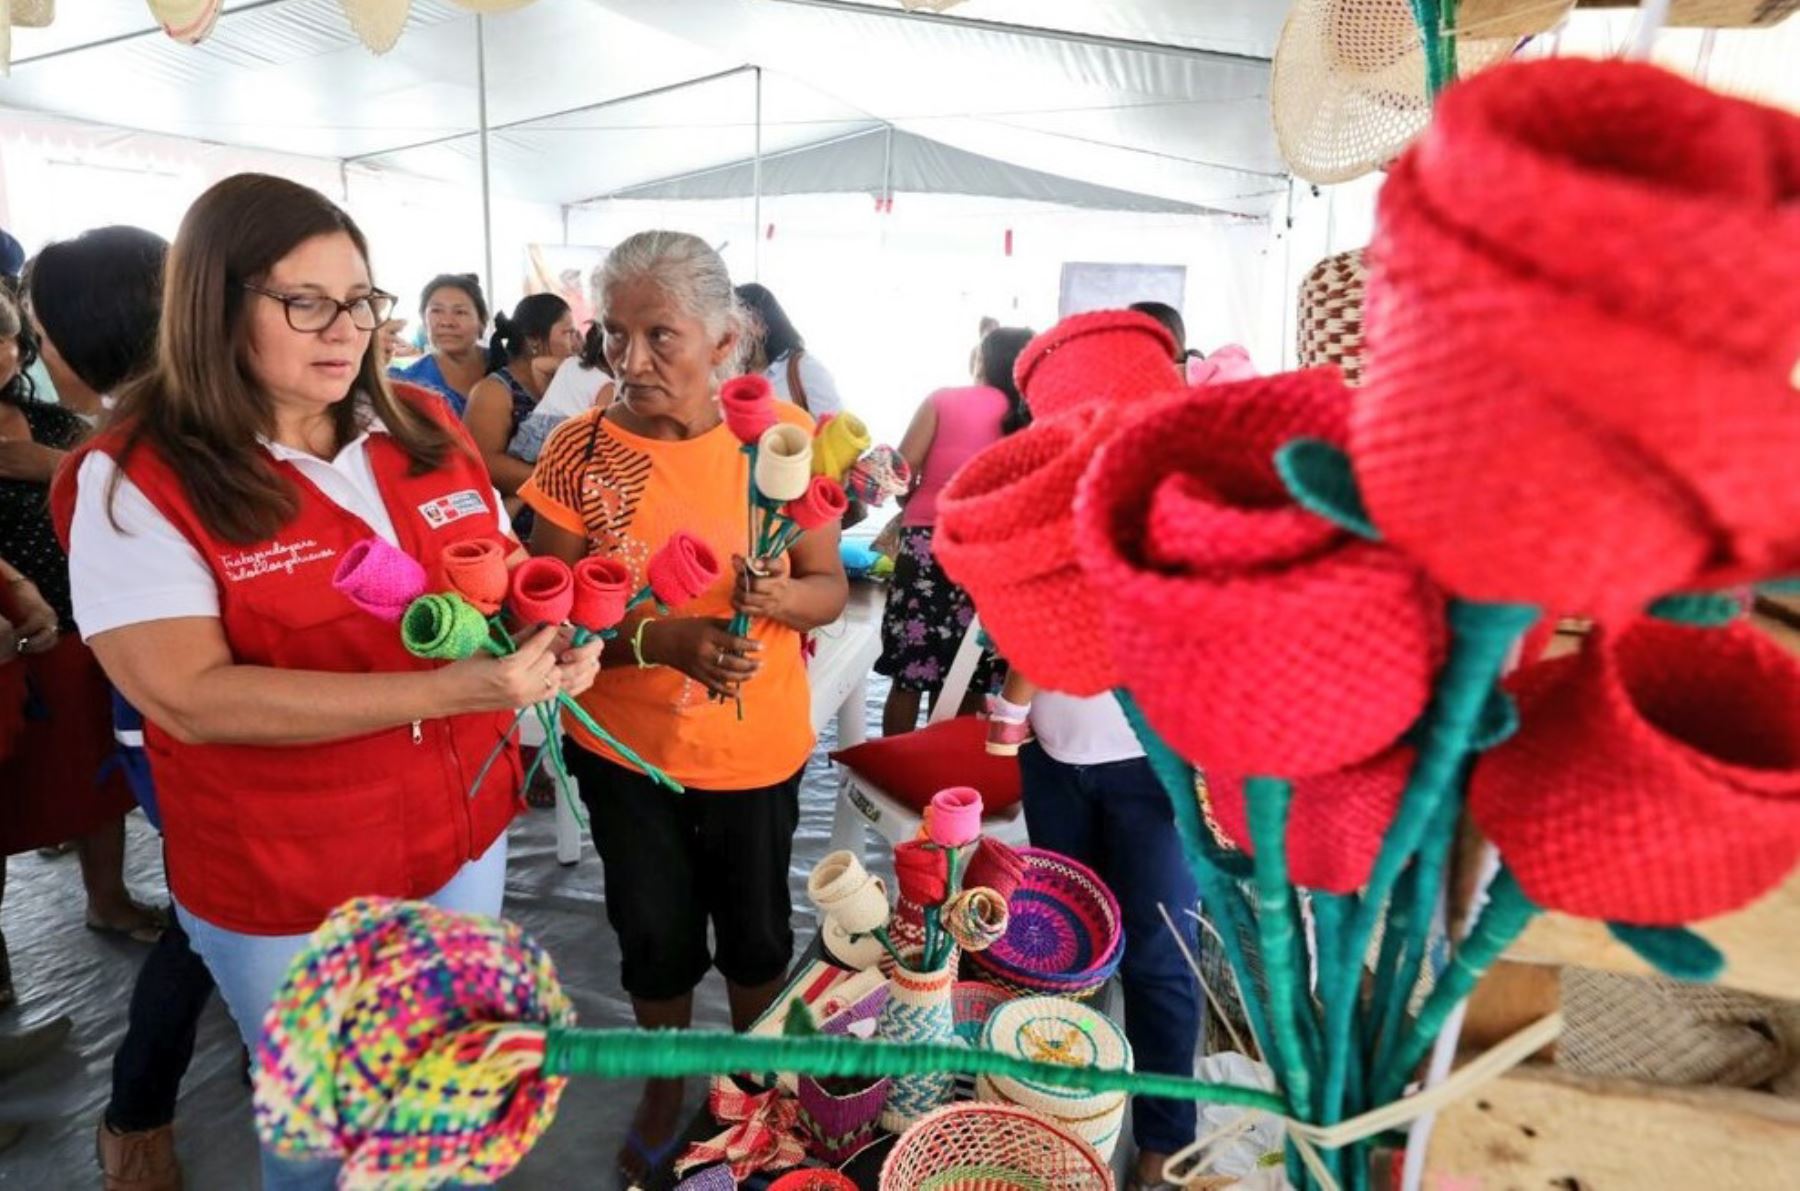 La ministra de la Mujer y Poblaciones Vulnerables (MIMP), Ana María Mendieta, realizó una visita oficial a la ciudad de Piura para promover los servicios que brinda su sector orientados al desarrollo de la autonomía económica de las mujeres en la región.